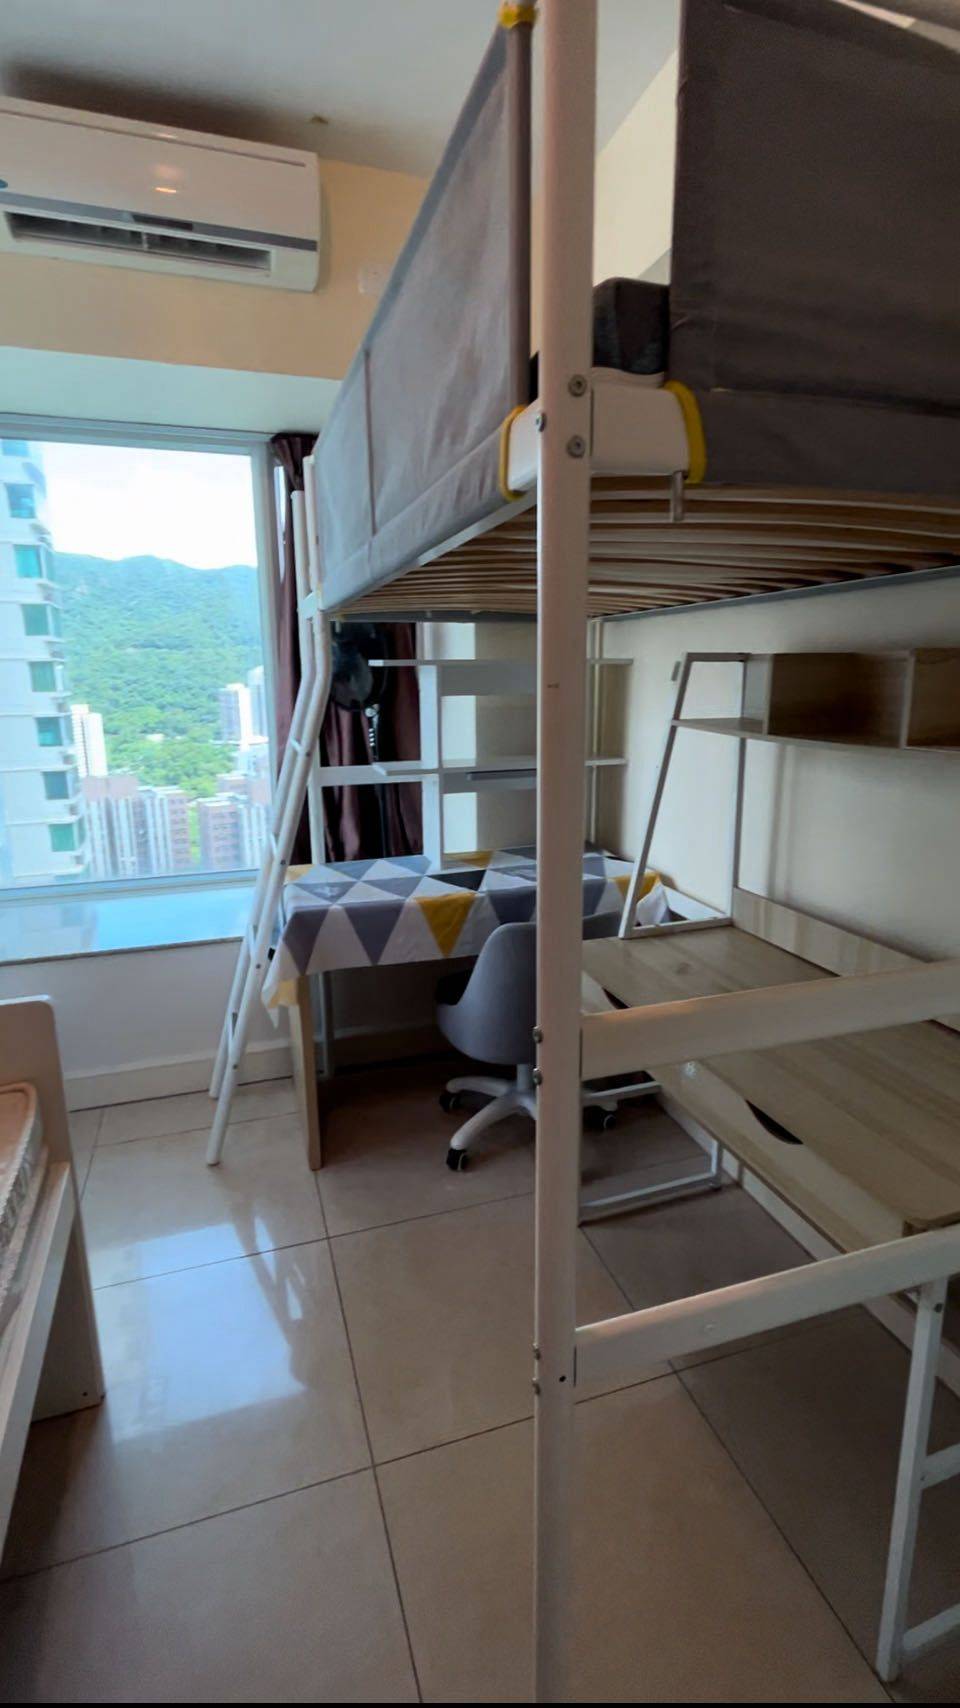 香港-新界-豪宅大户型,低价转